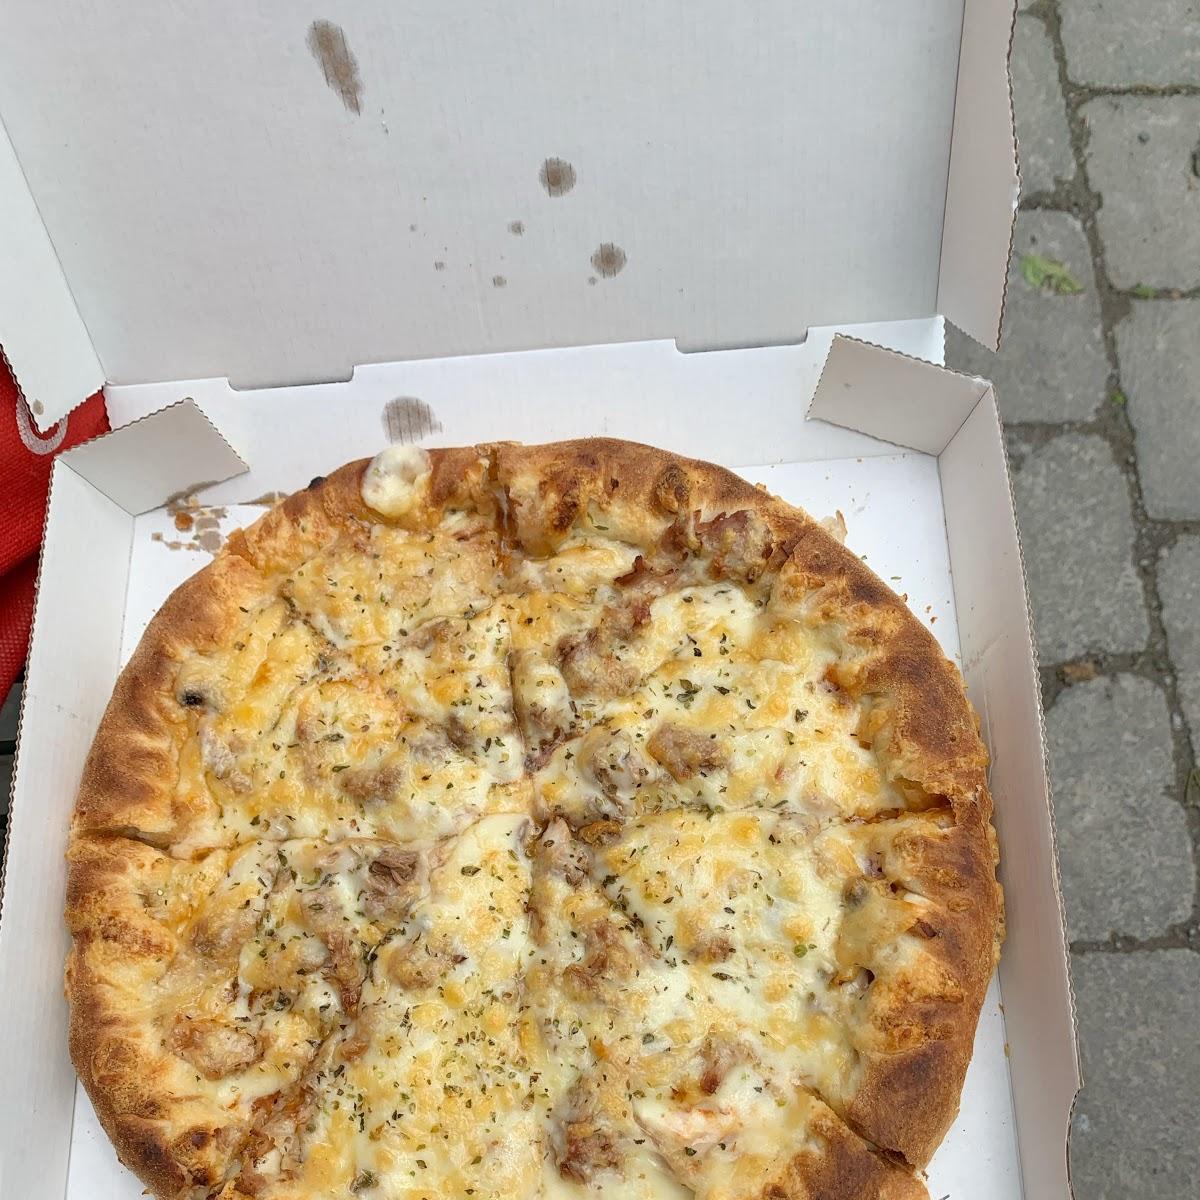 Restaurant "pizzaboy" in Köln